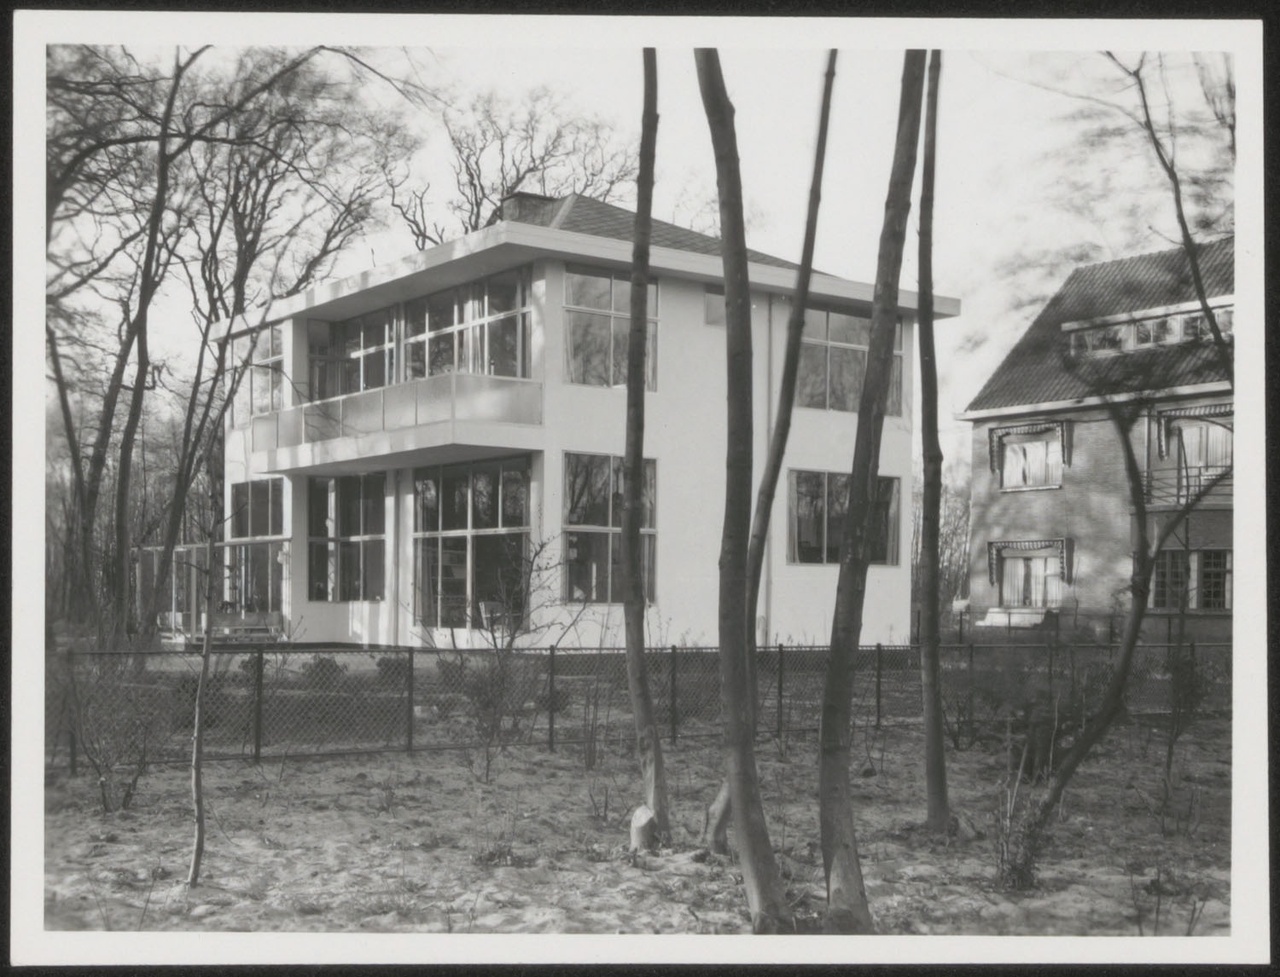 Afbeelding van woning Hillebrand, ca.1935, tuinkant hoek aan de straatzijde